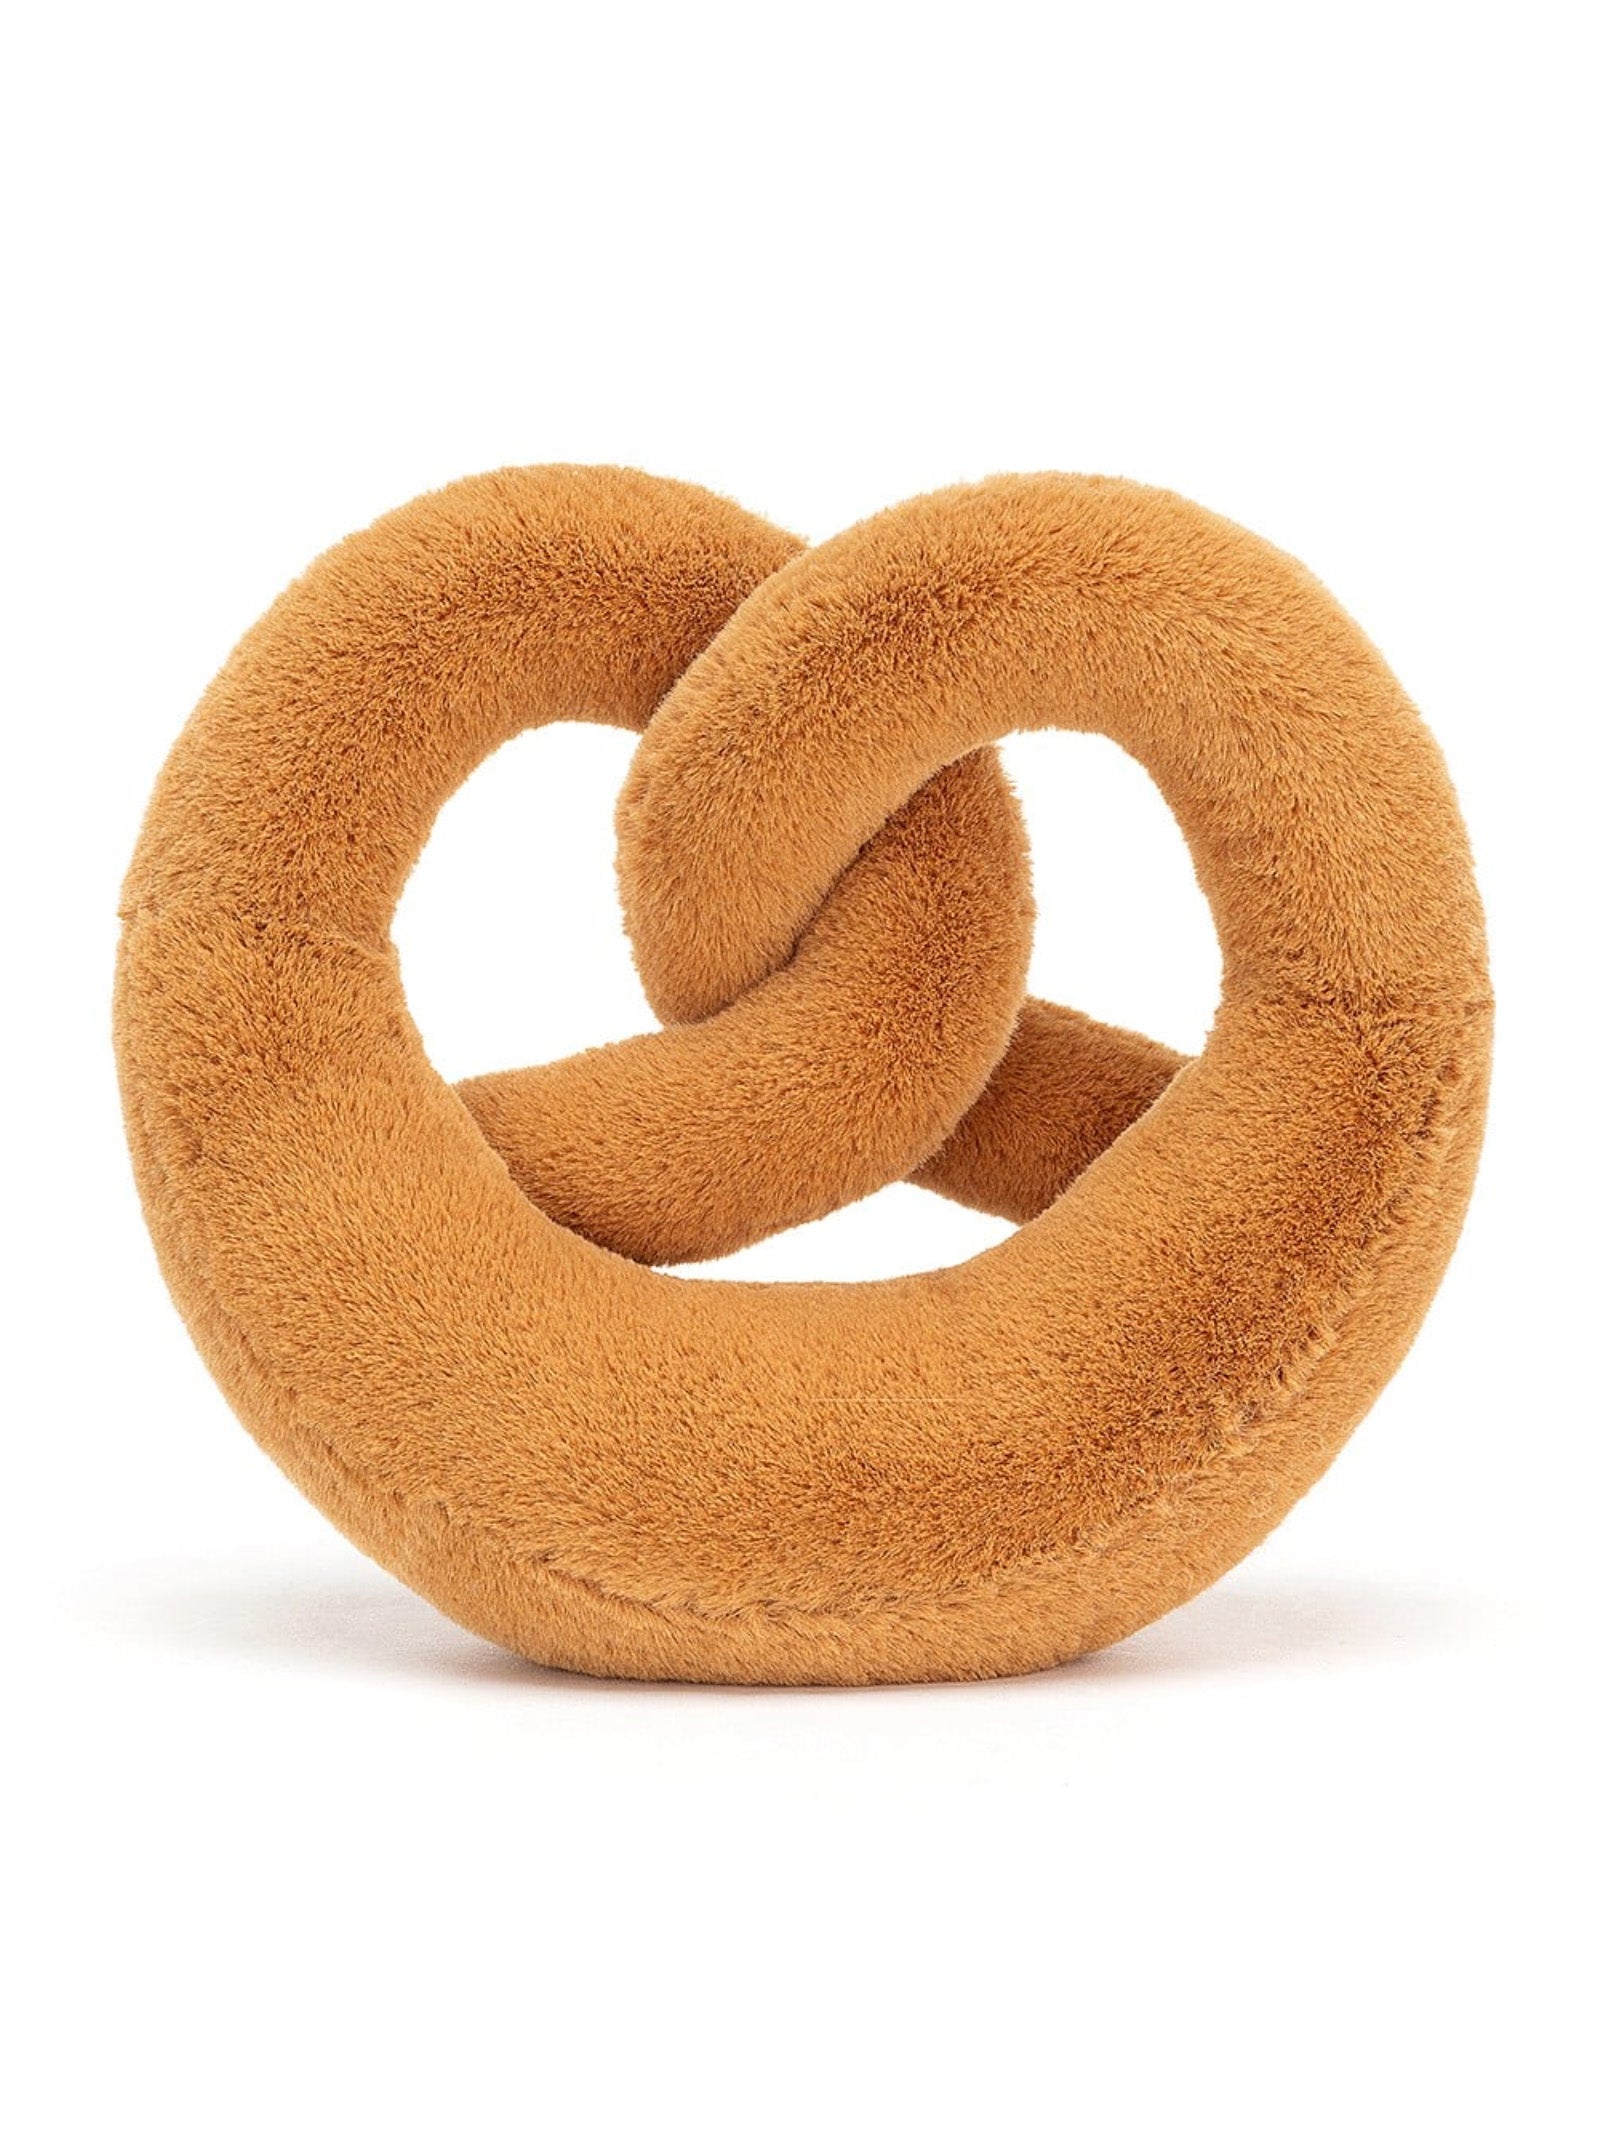 amuseable pretzel